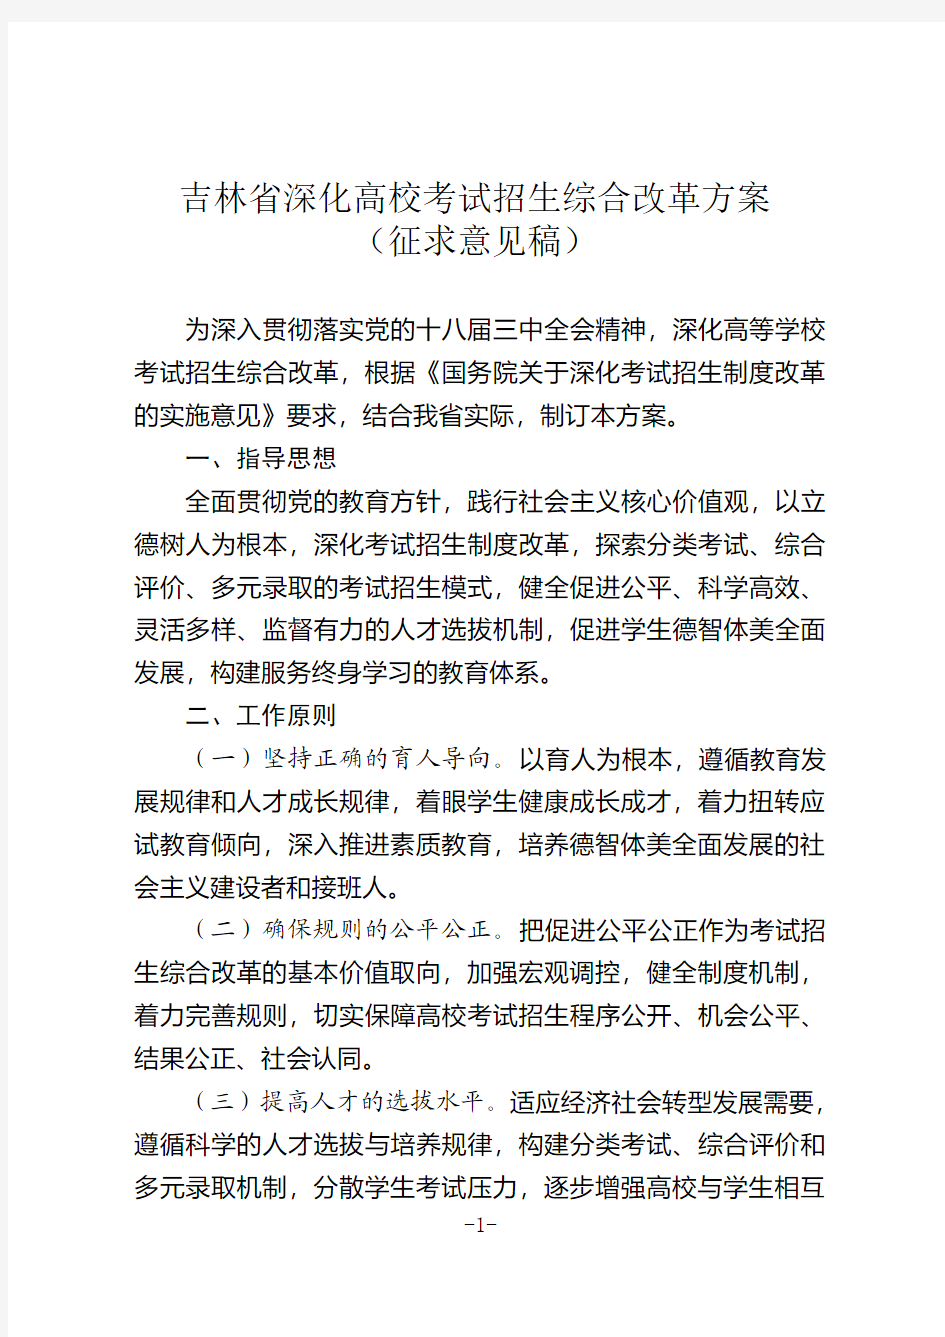 吉林省深化高校考试招生综合改革方案(试行)201411.27 (1)